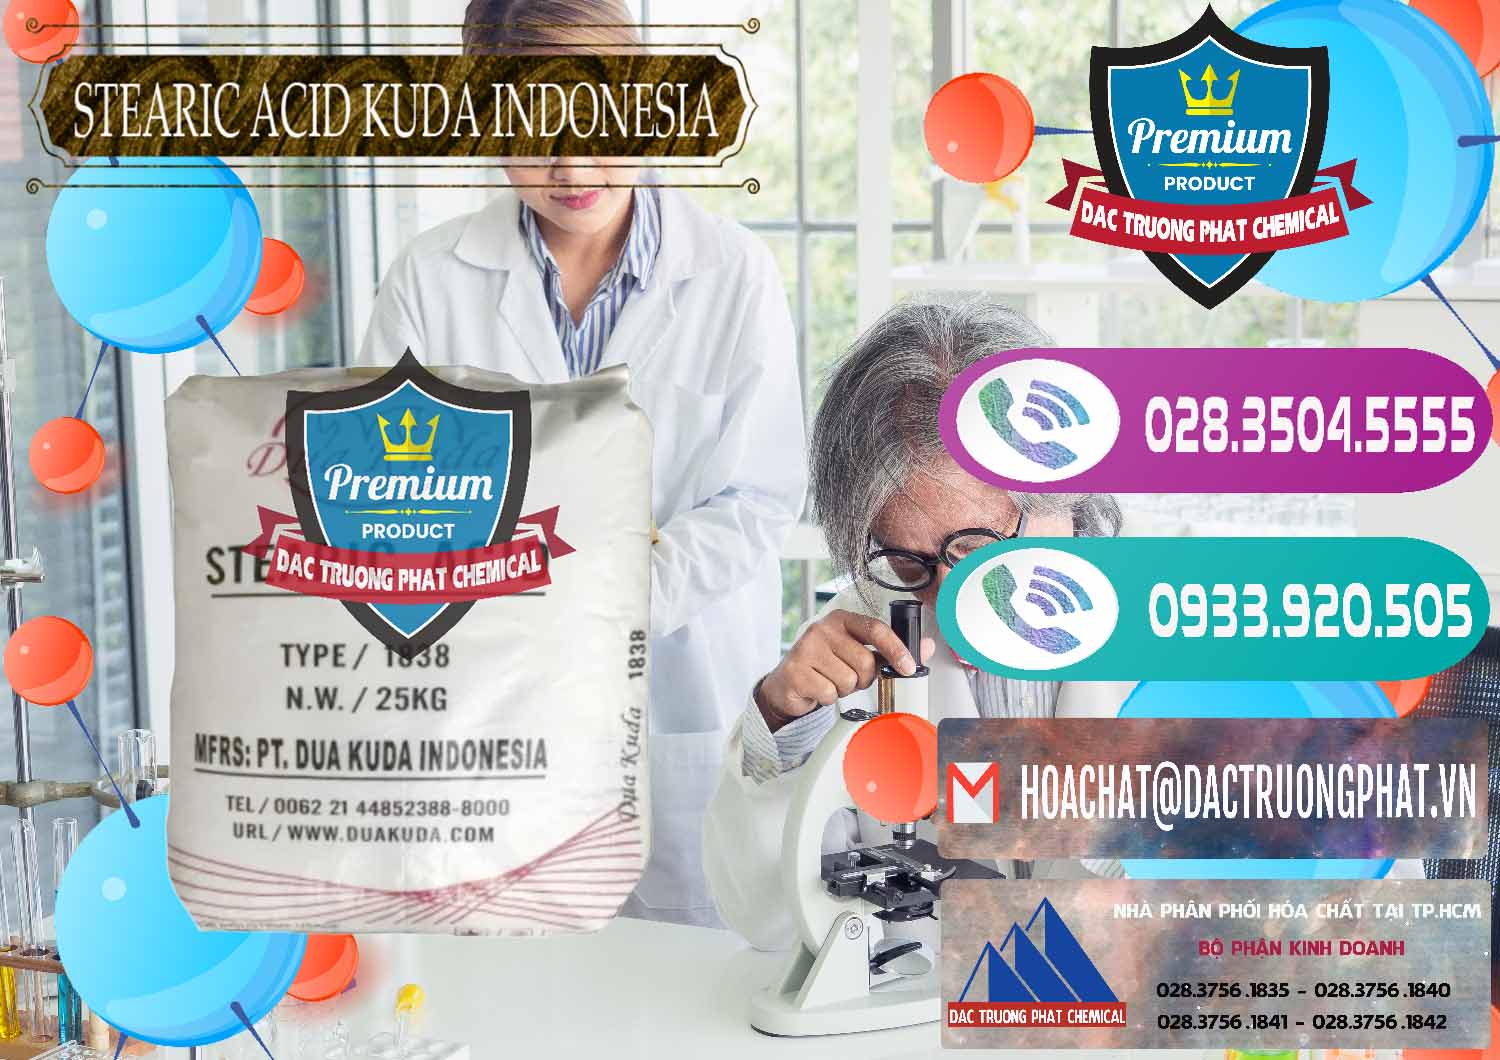 Đơn vị kinh doanh ( bán ) Axit Stearic - Stearic Acid Dua Kuda Indonesia - 0388 - Nhà phân phối ( cung cấp ) hóa chất tại TP.HCM - hoachatxulynuoc.com